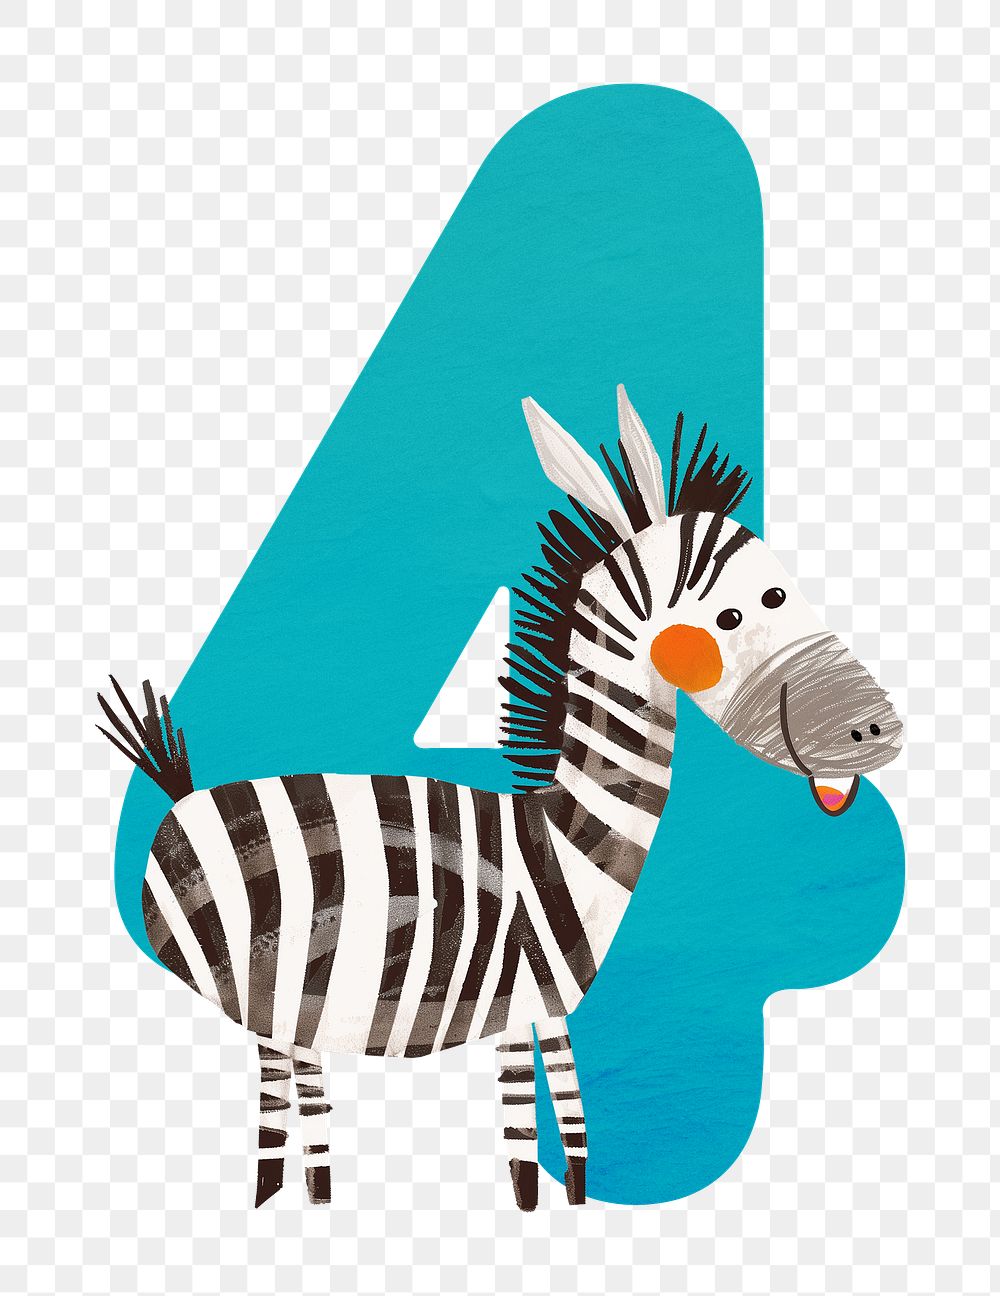 Number 4 png animal character illustration, transparent background